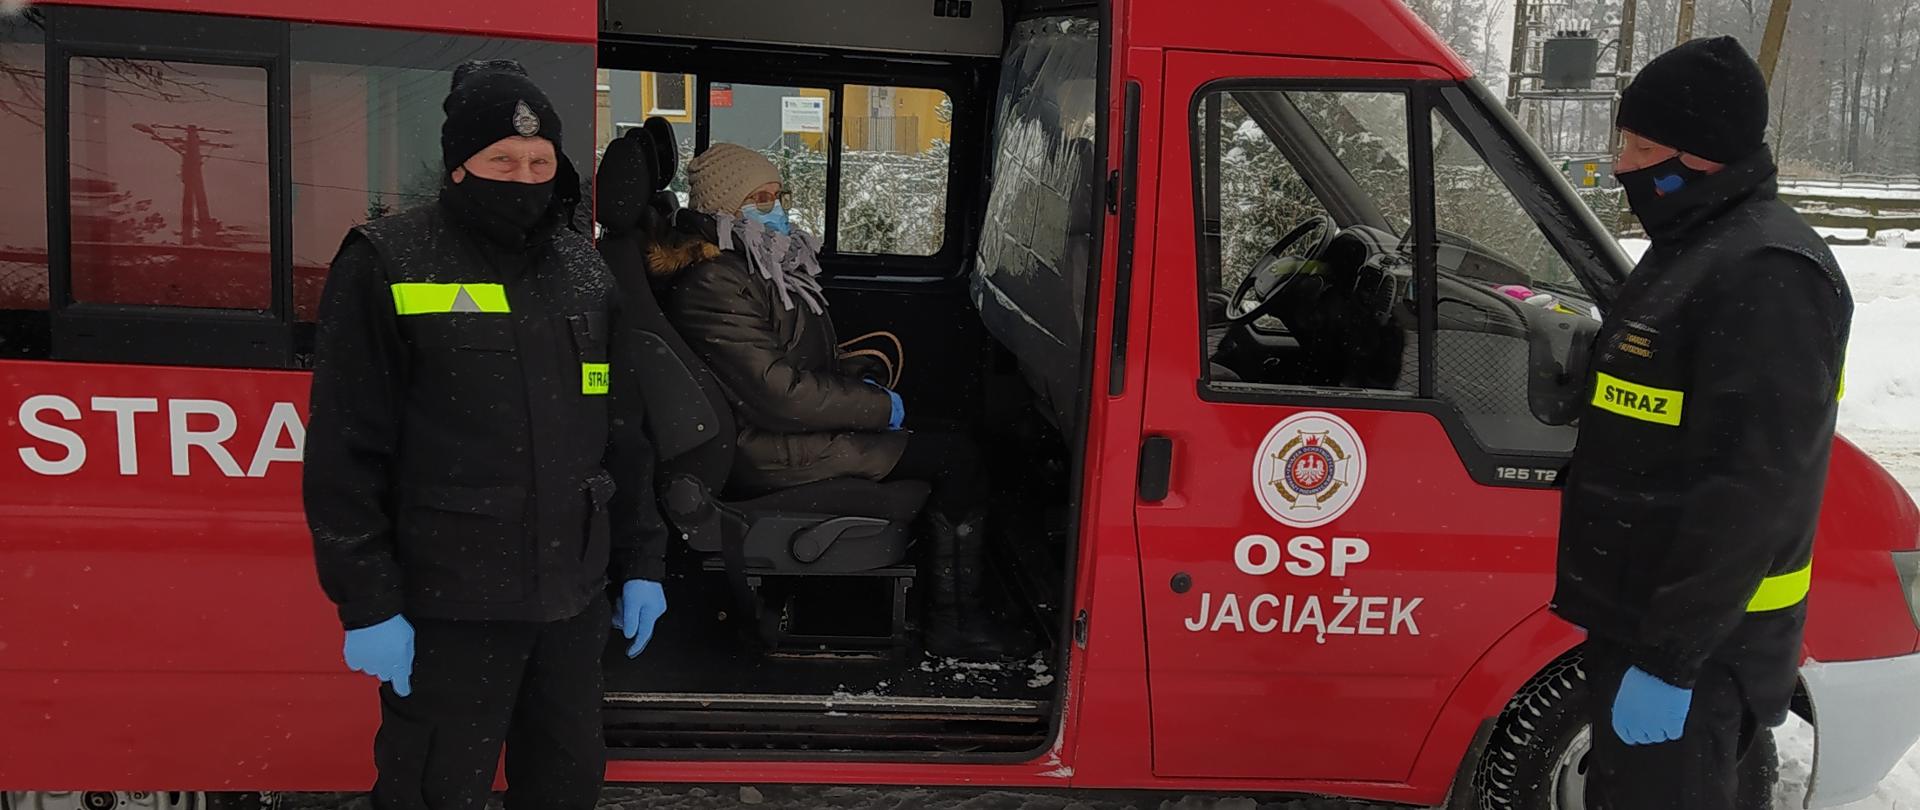 Dwóch strażaków OSP stoi przed samochodem strażackim. W środku, w tylnym rzędzie siedzi starsza kobieta transportowana do przychodni POZ. Drzwi do samochodu są otwarte.